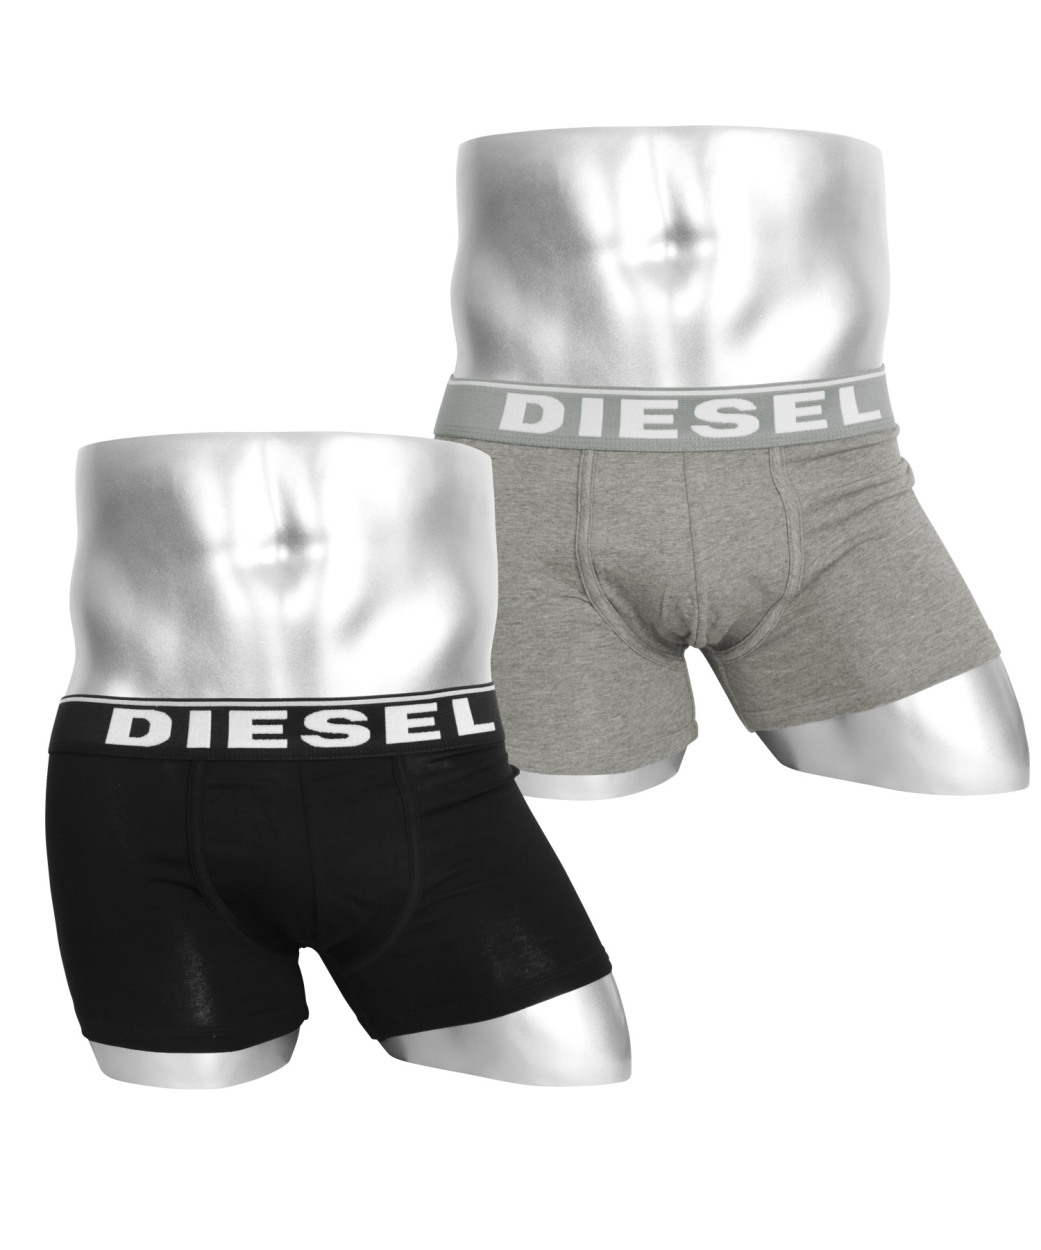 ディーゼル DIESEL ボクサーパンツ 2枚セット メンズ アンダーウェア 男性 下着 綿混 コットン ブランド ロゴ プレゼント ギフト